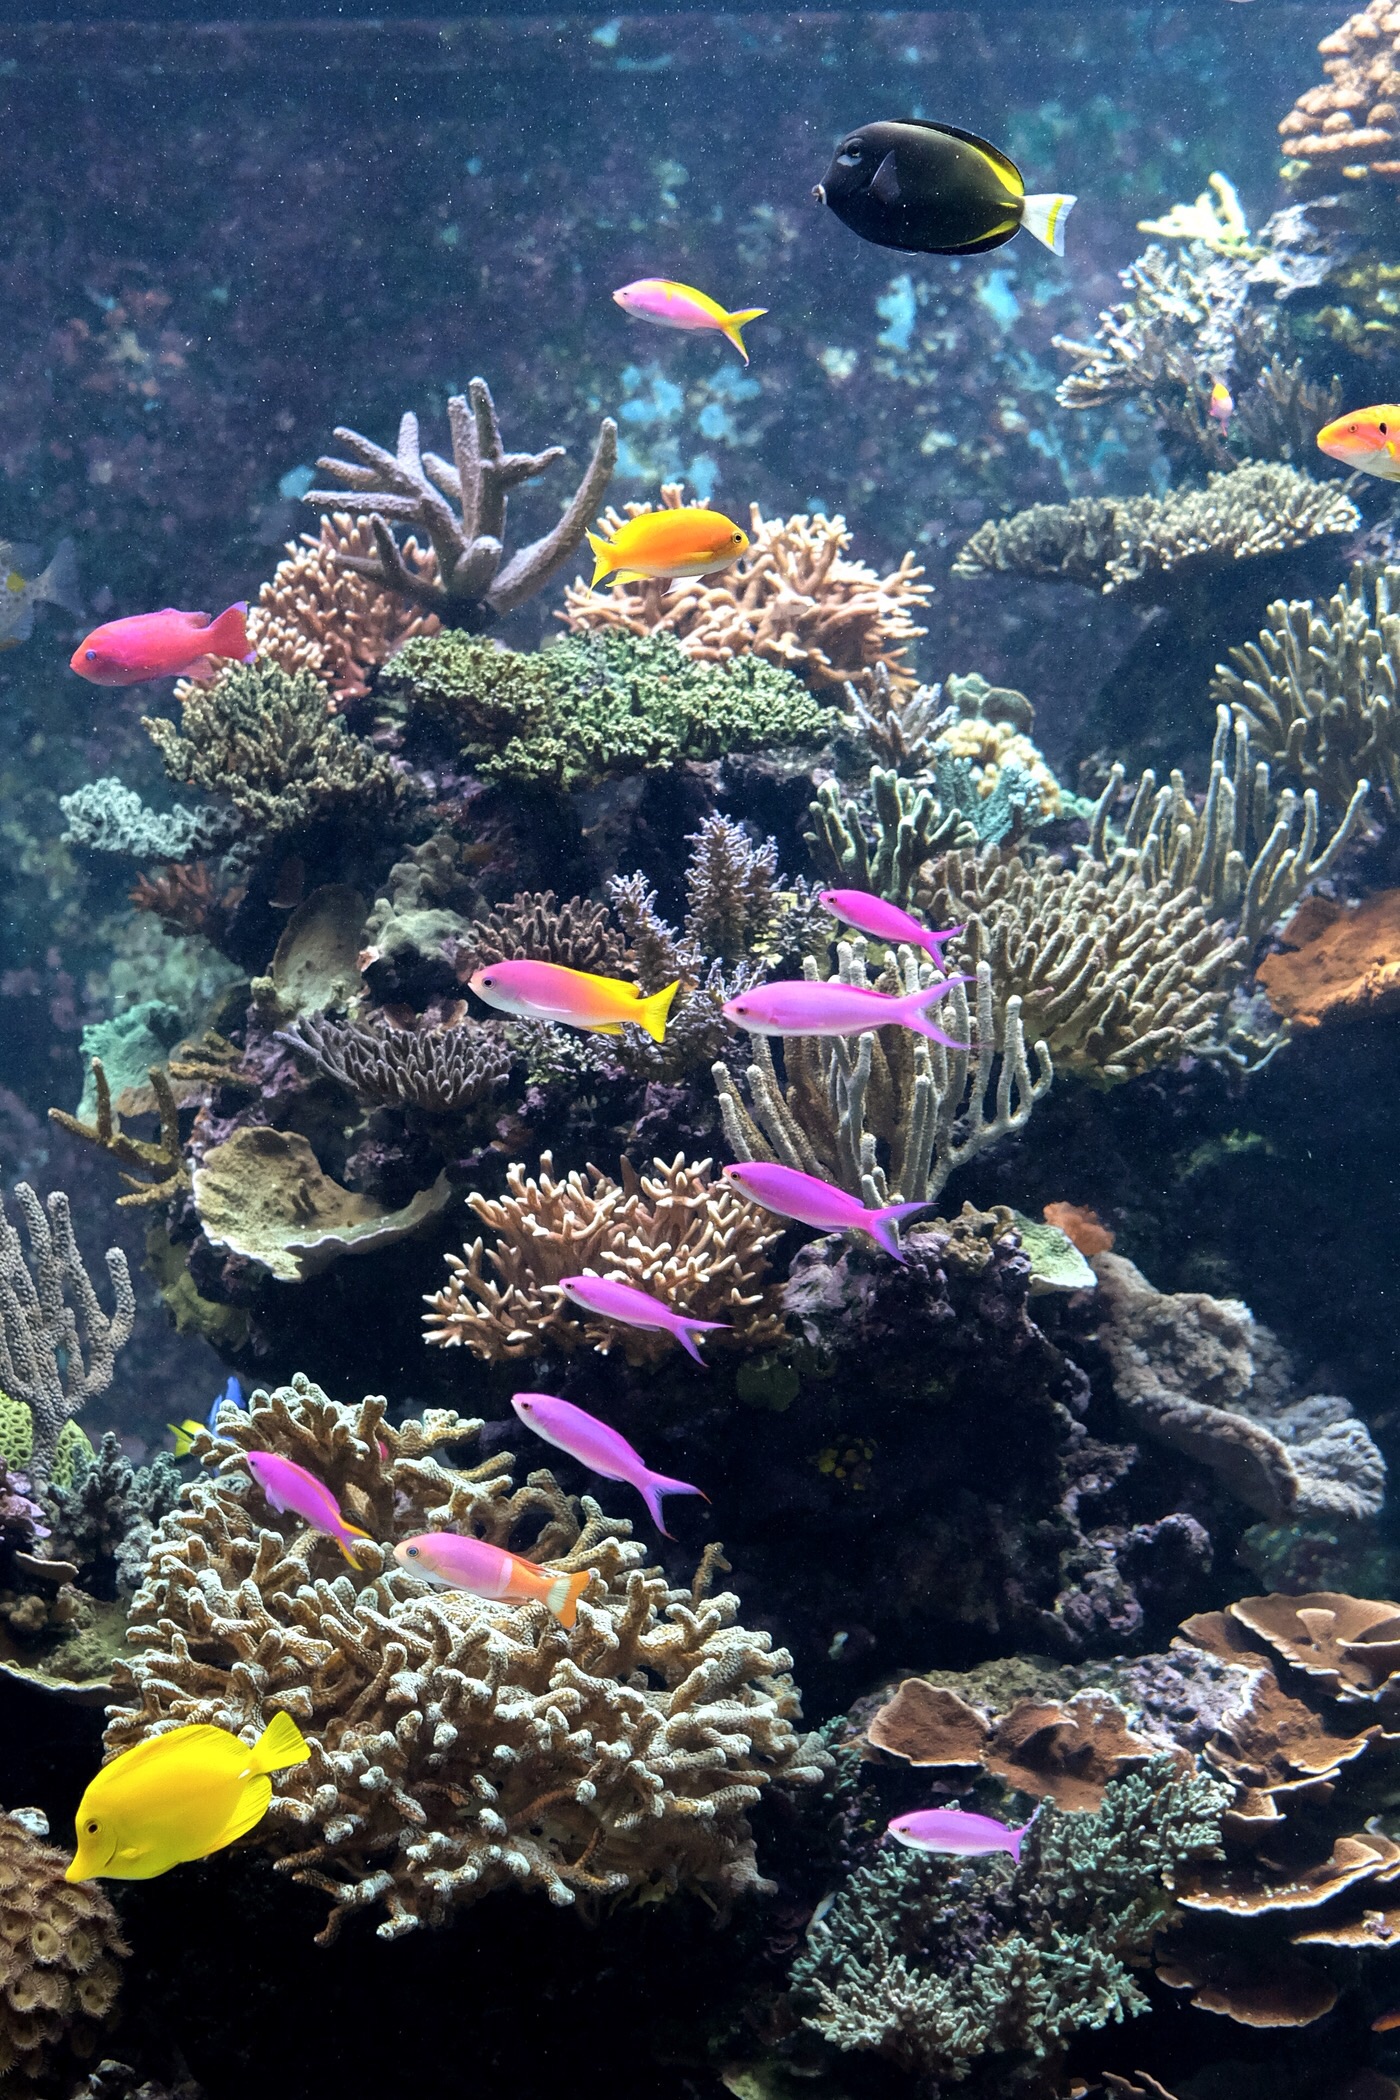 S.E.A. aquarium — Sentosa, Singapore